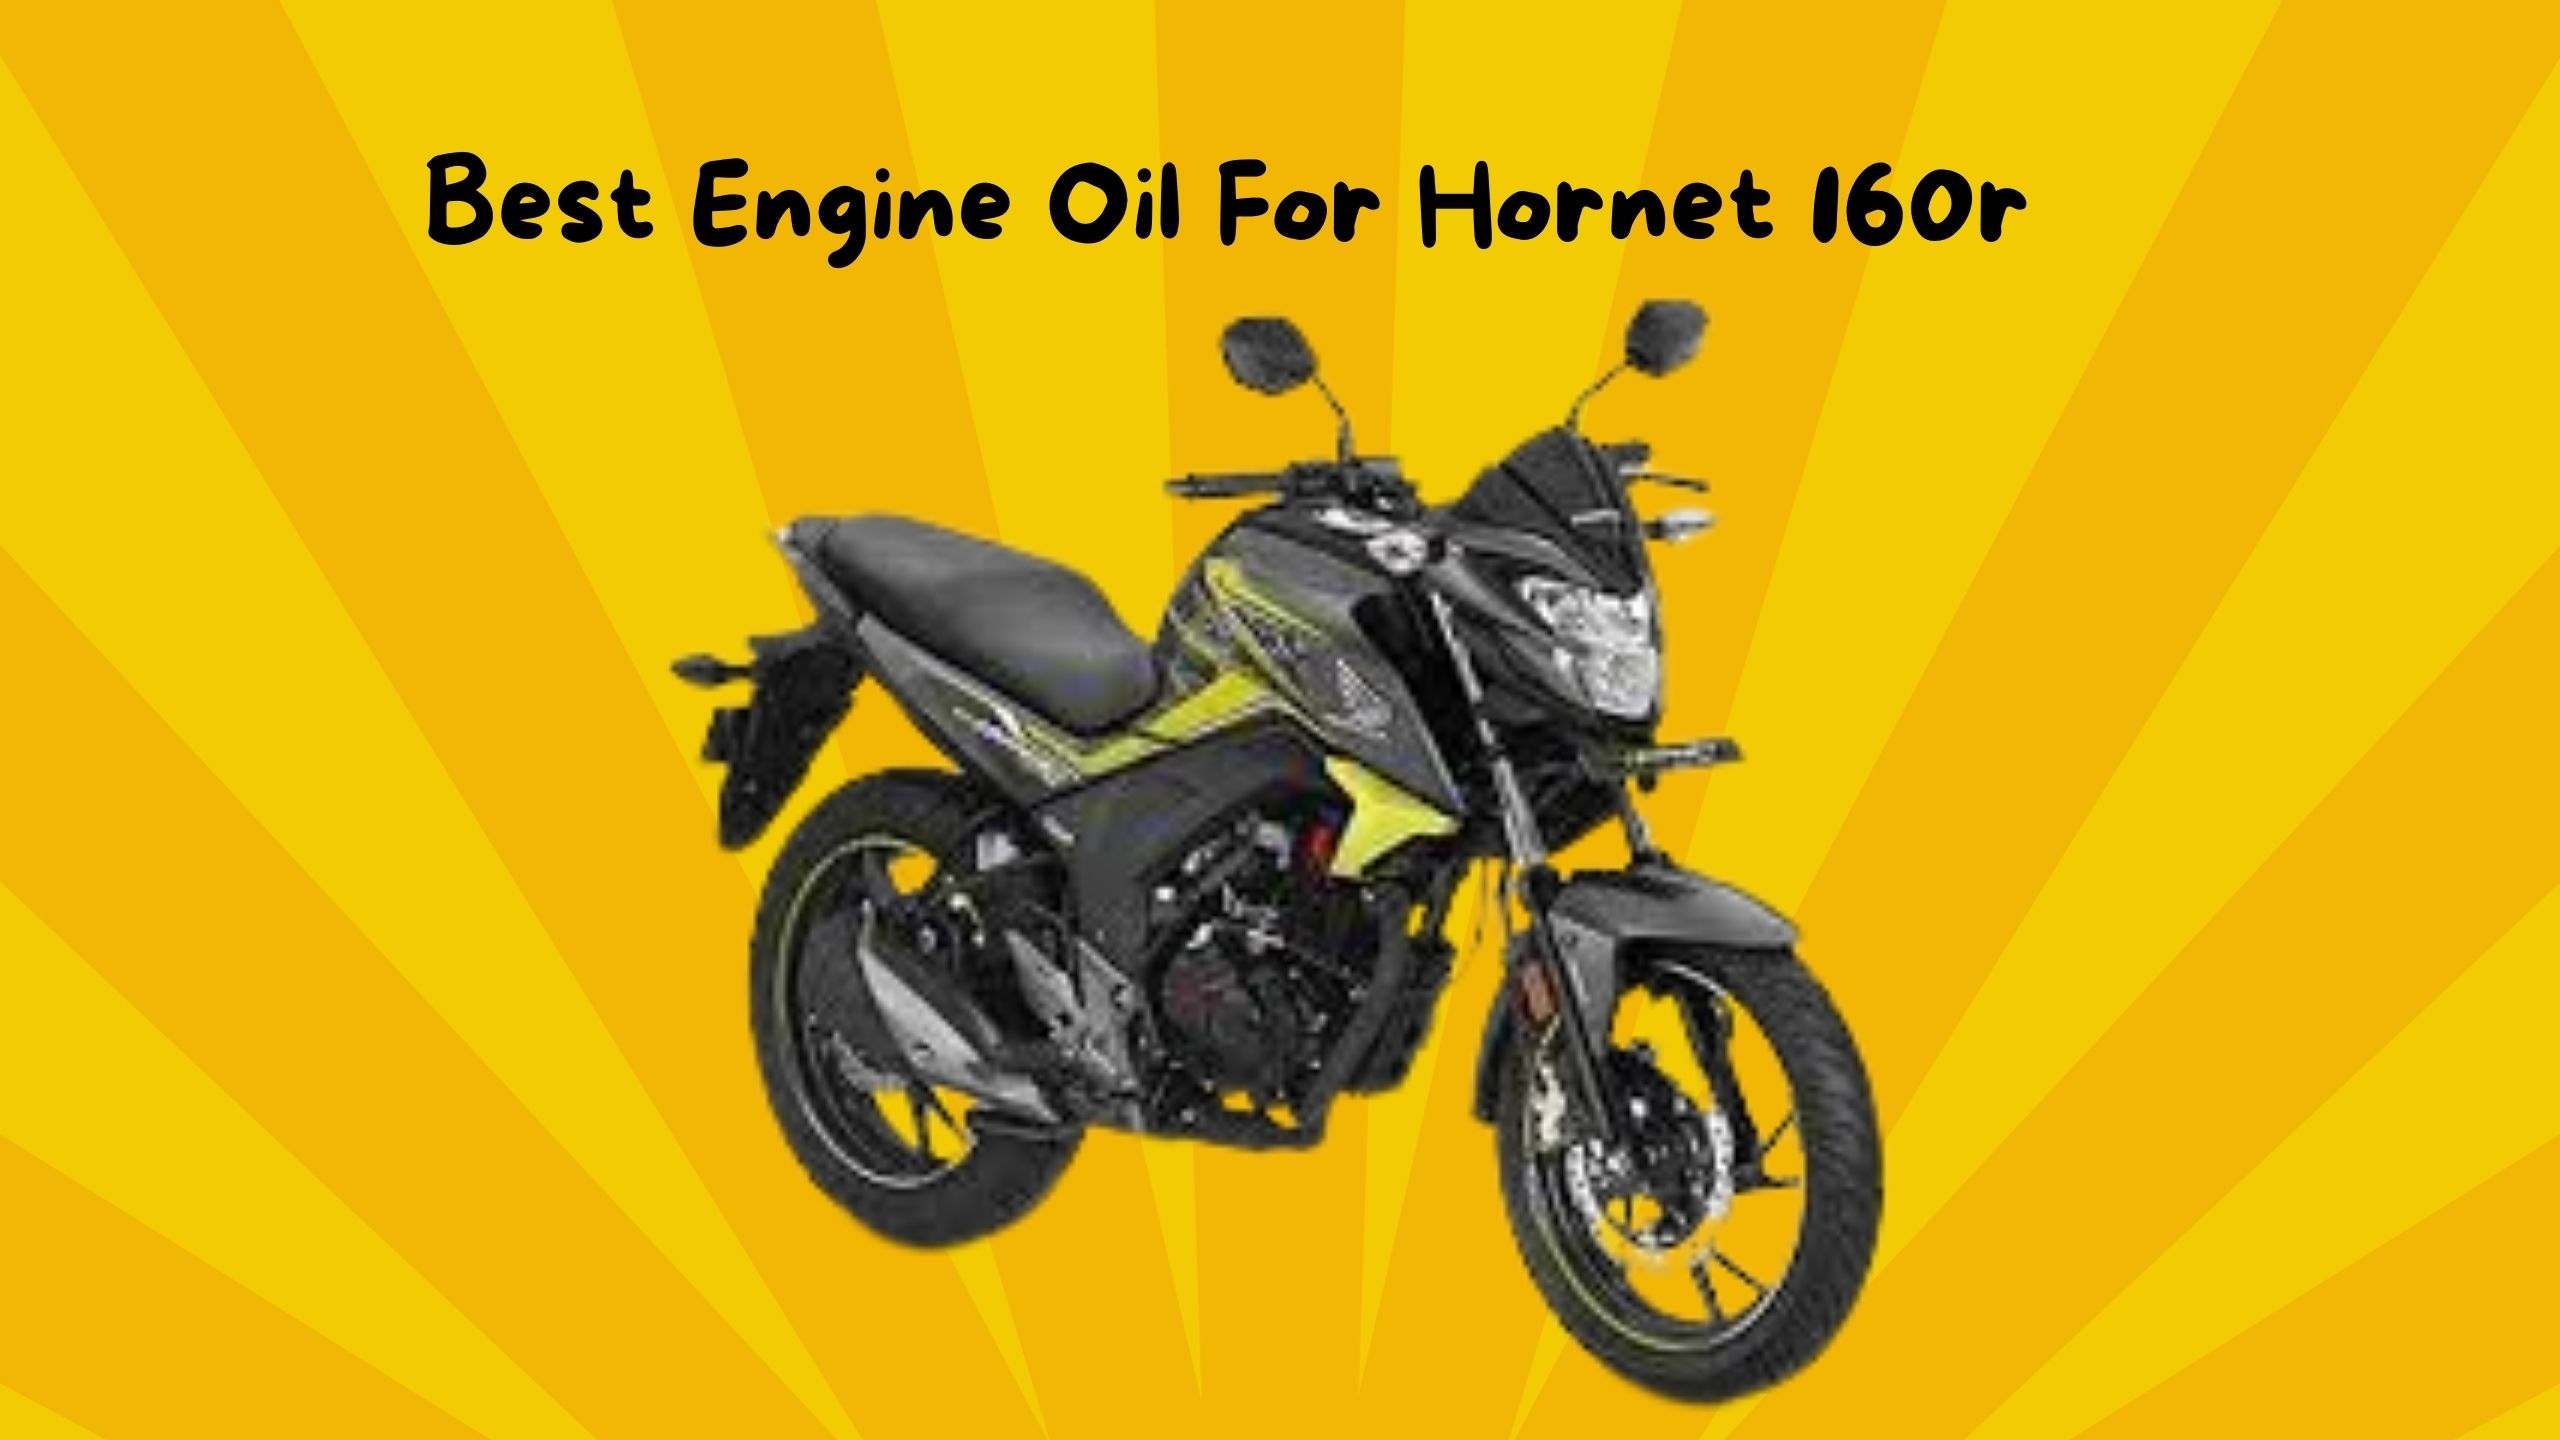 Best engine oil for hornet 160r